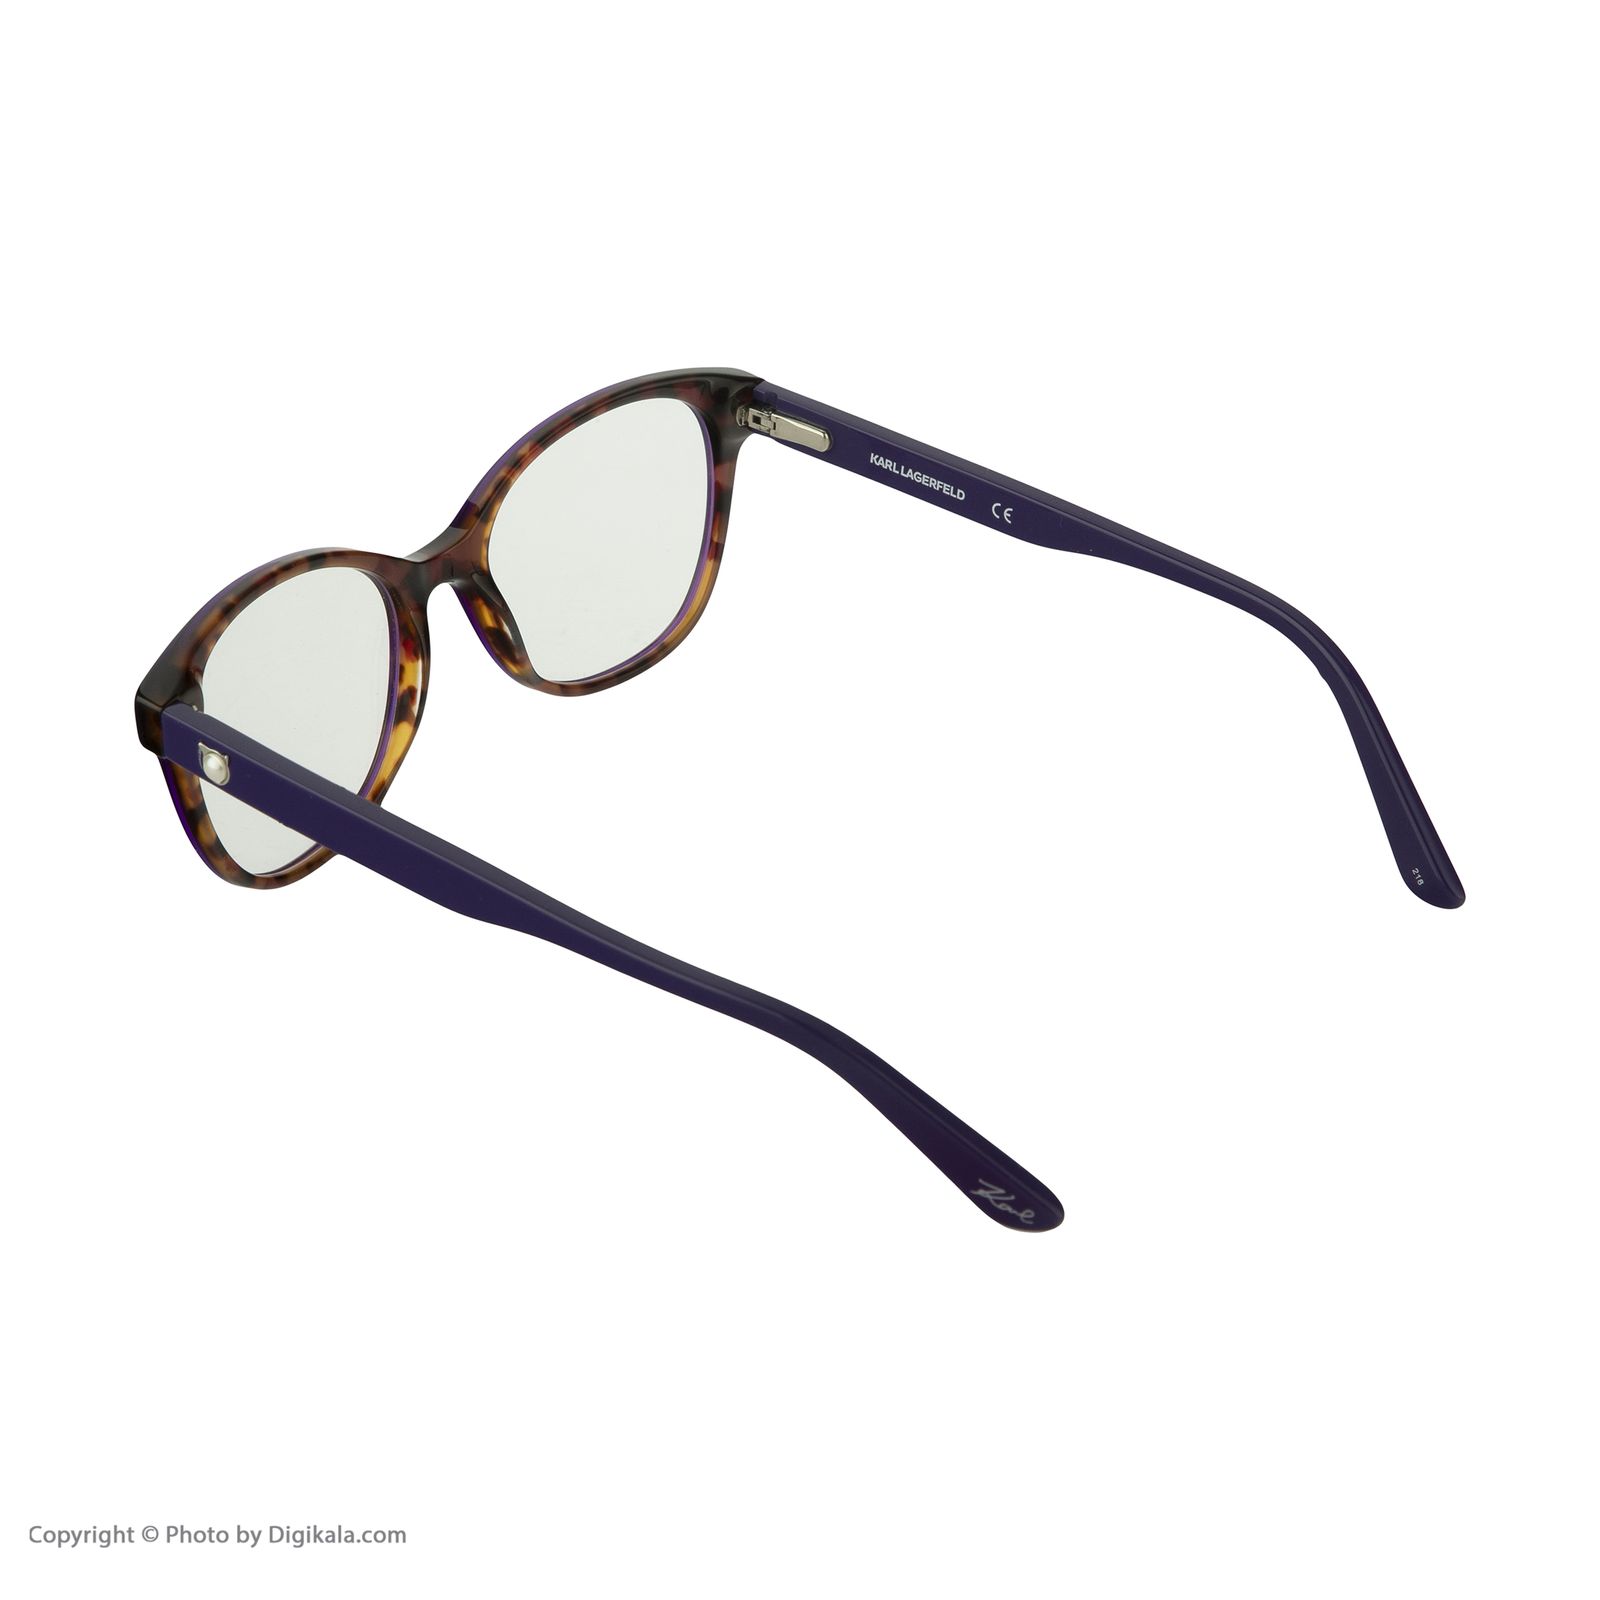 فریم عینک طبی زنانه کارل لاگرفلد مدل KL970V150 -  - 4